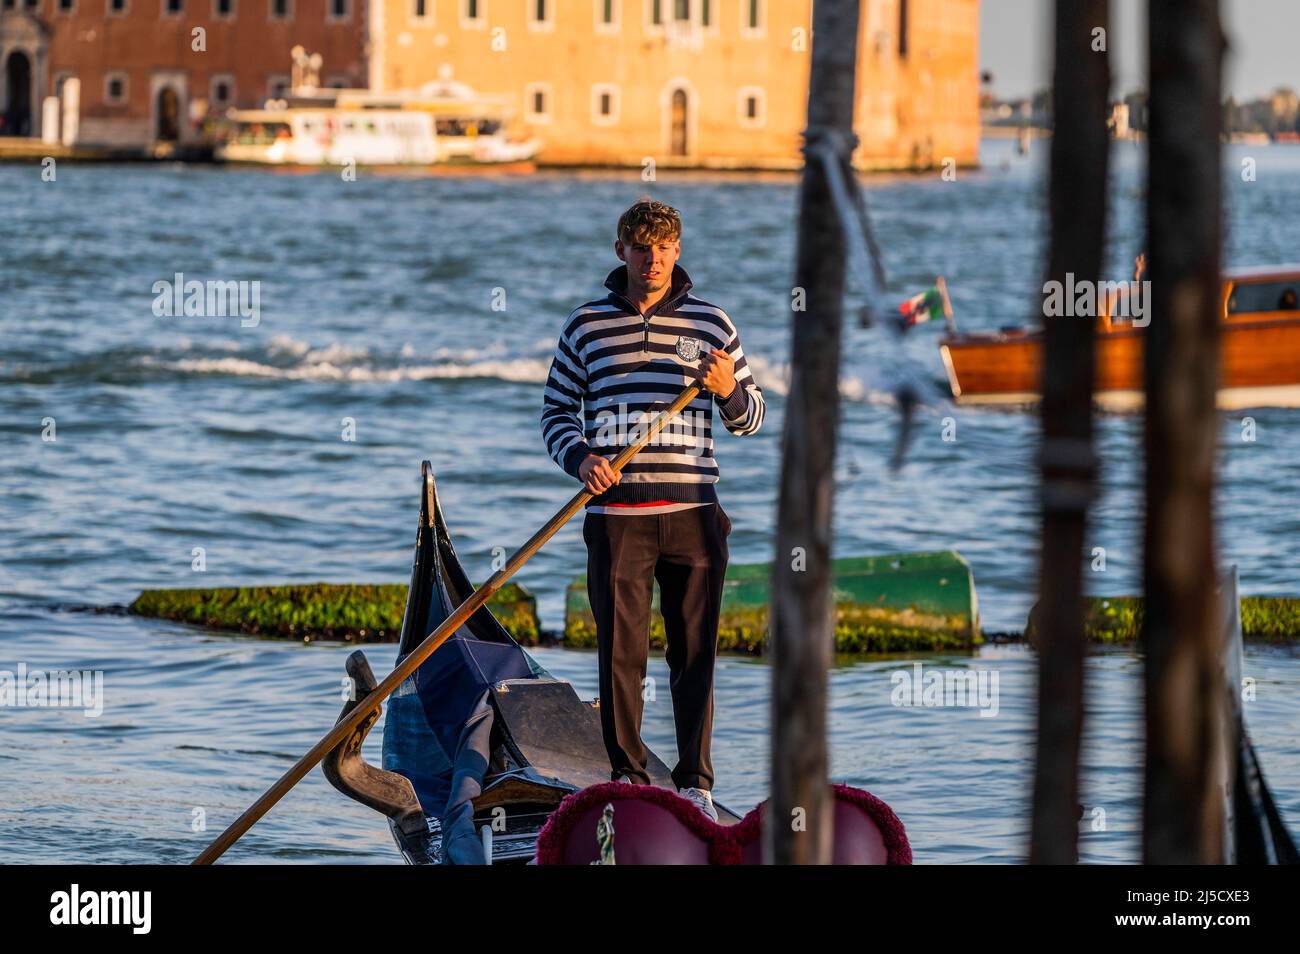 Les gondoles sont une forme de transport d'eau très appréciée, même si elle est chère. Les canaux sont les artères principales qui portent toutes les formes de transport de l'eau - Venise au début de la Biennale di Venezia en 2022. Banque D'Images